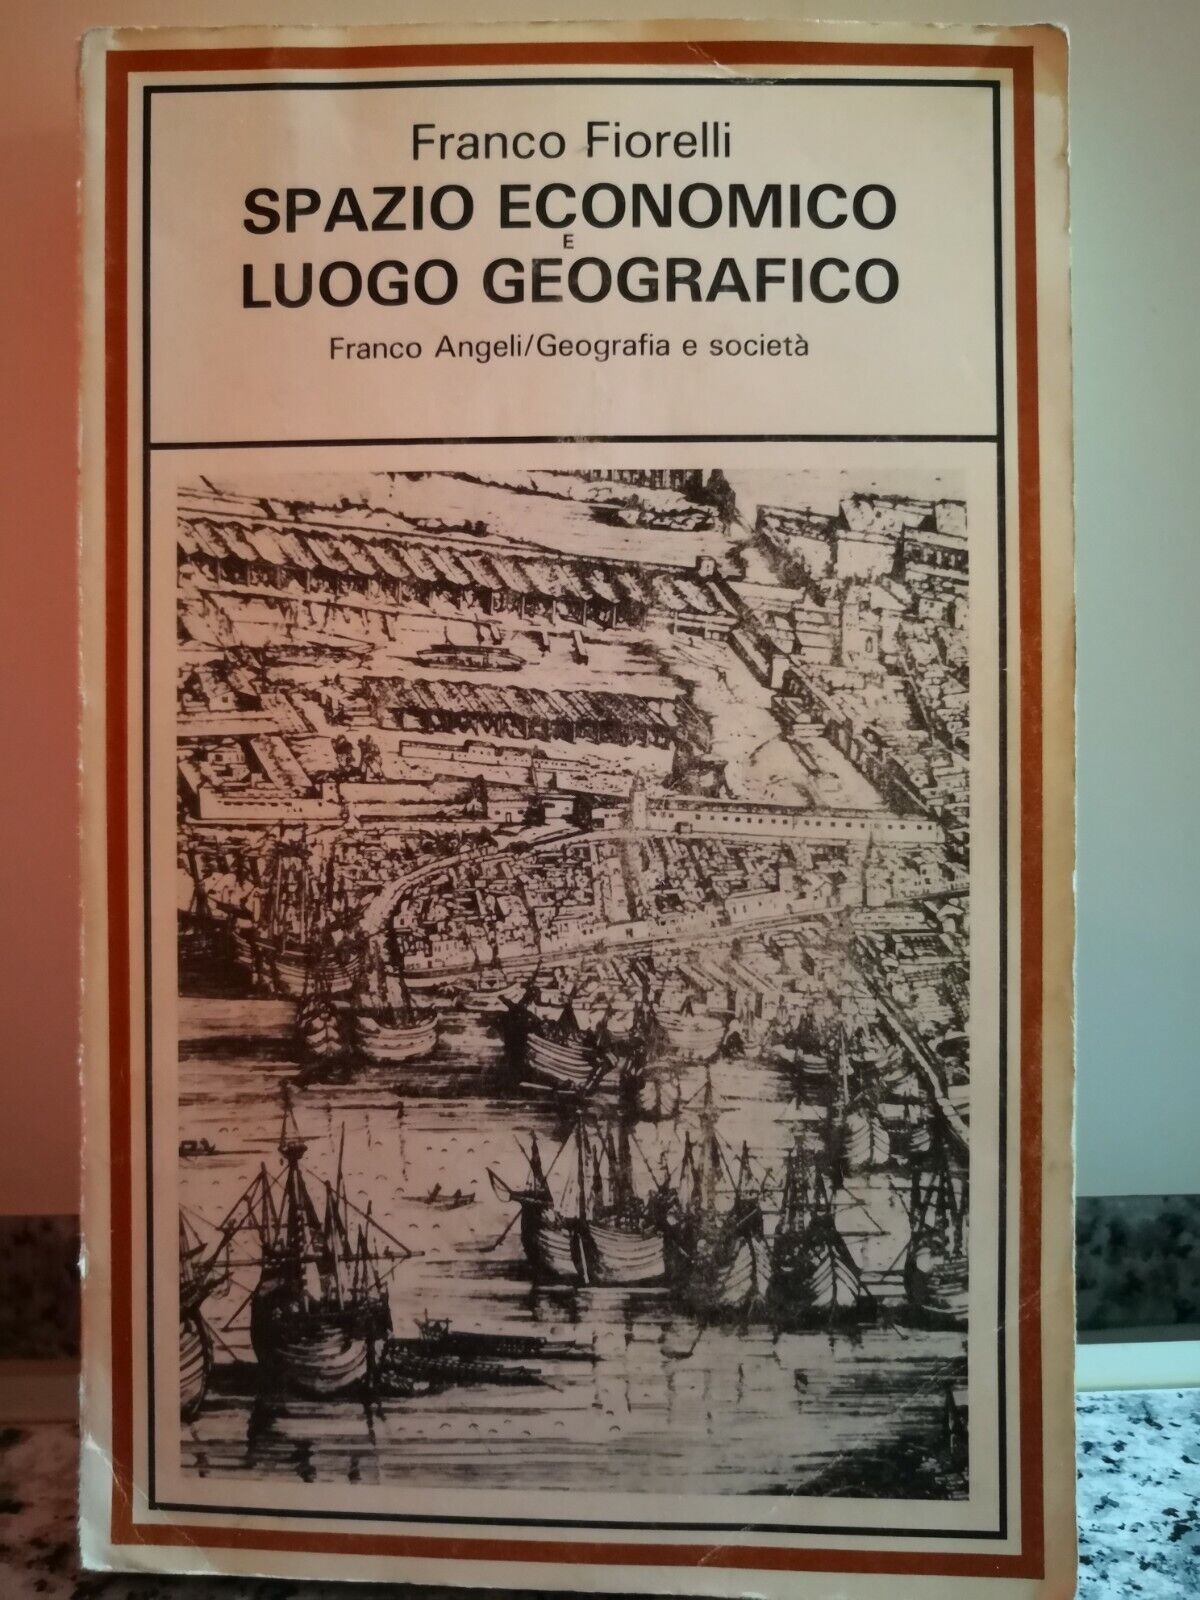 Spazio economico e luogo geografico  di Franco Fiorelli,  1988,  Franco Angeli-F